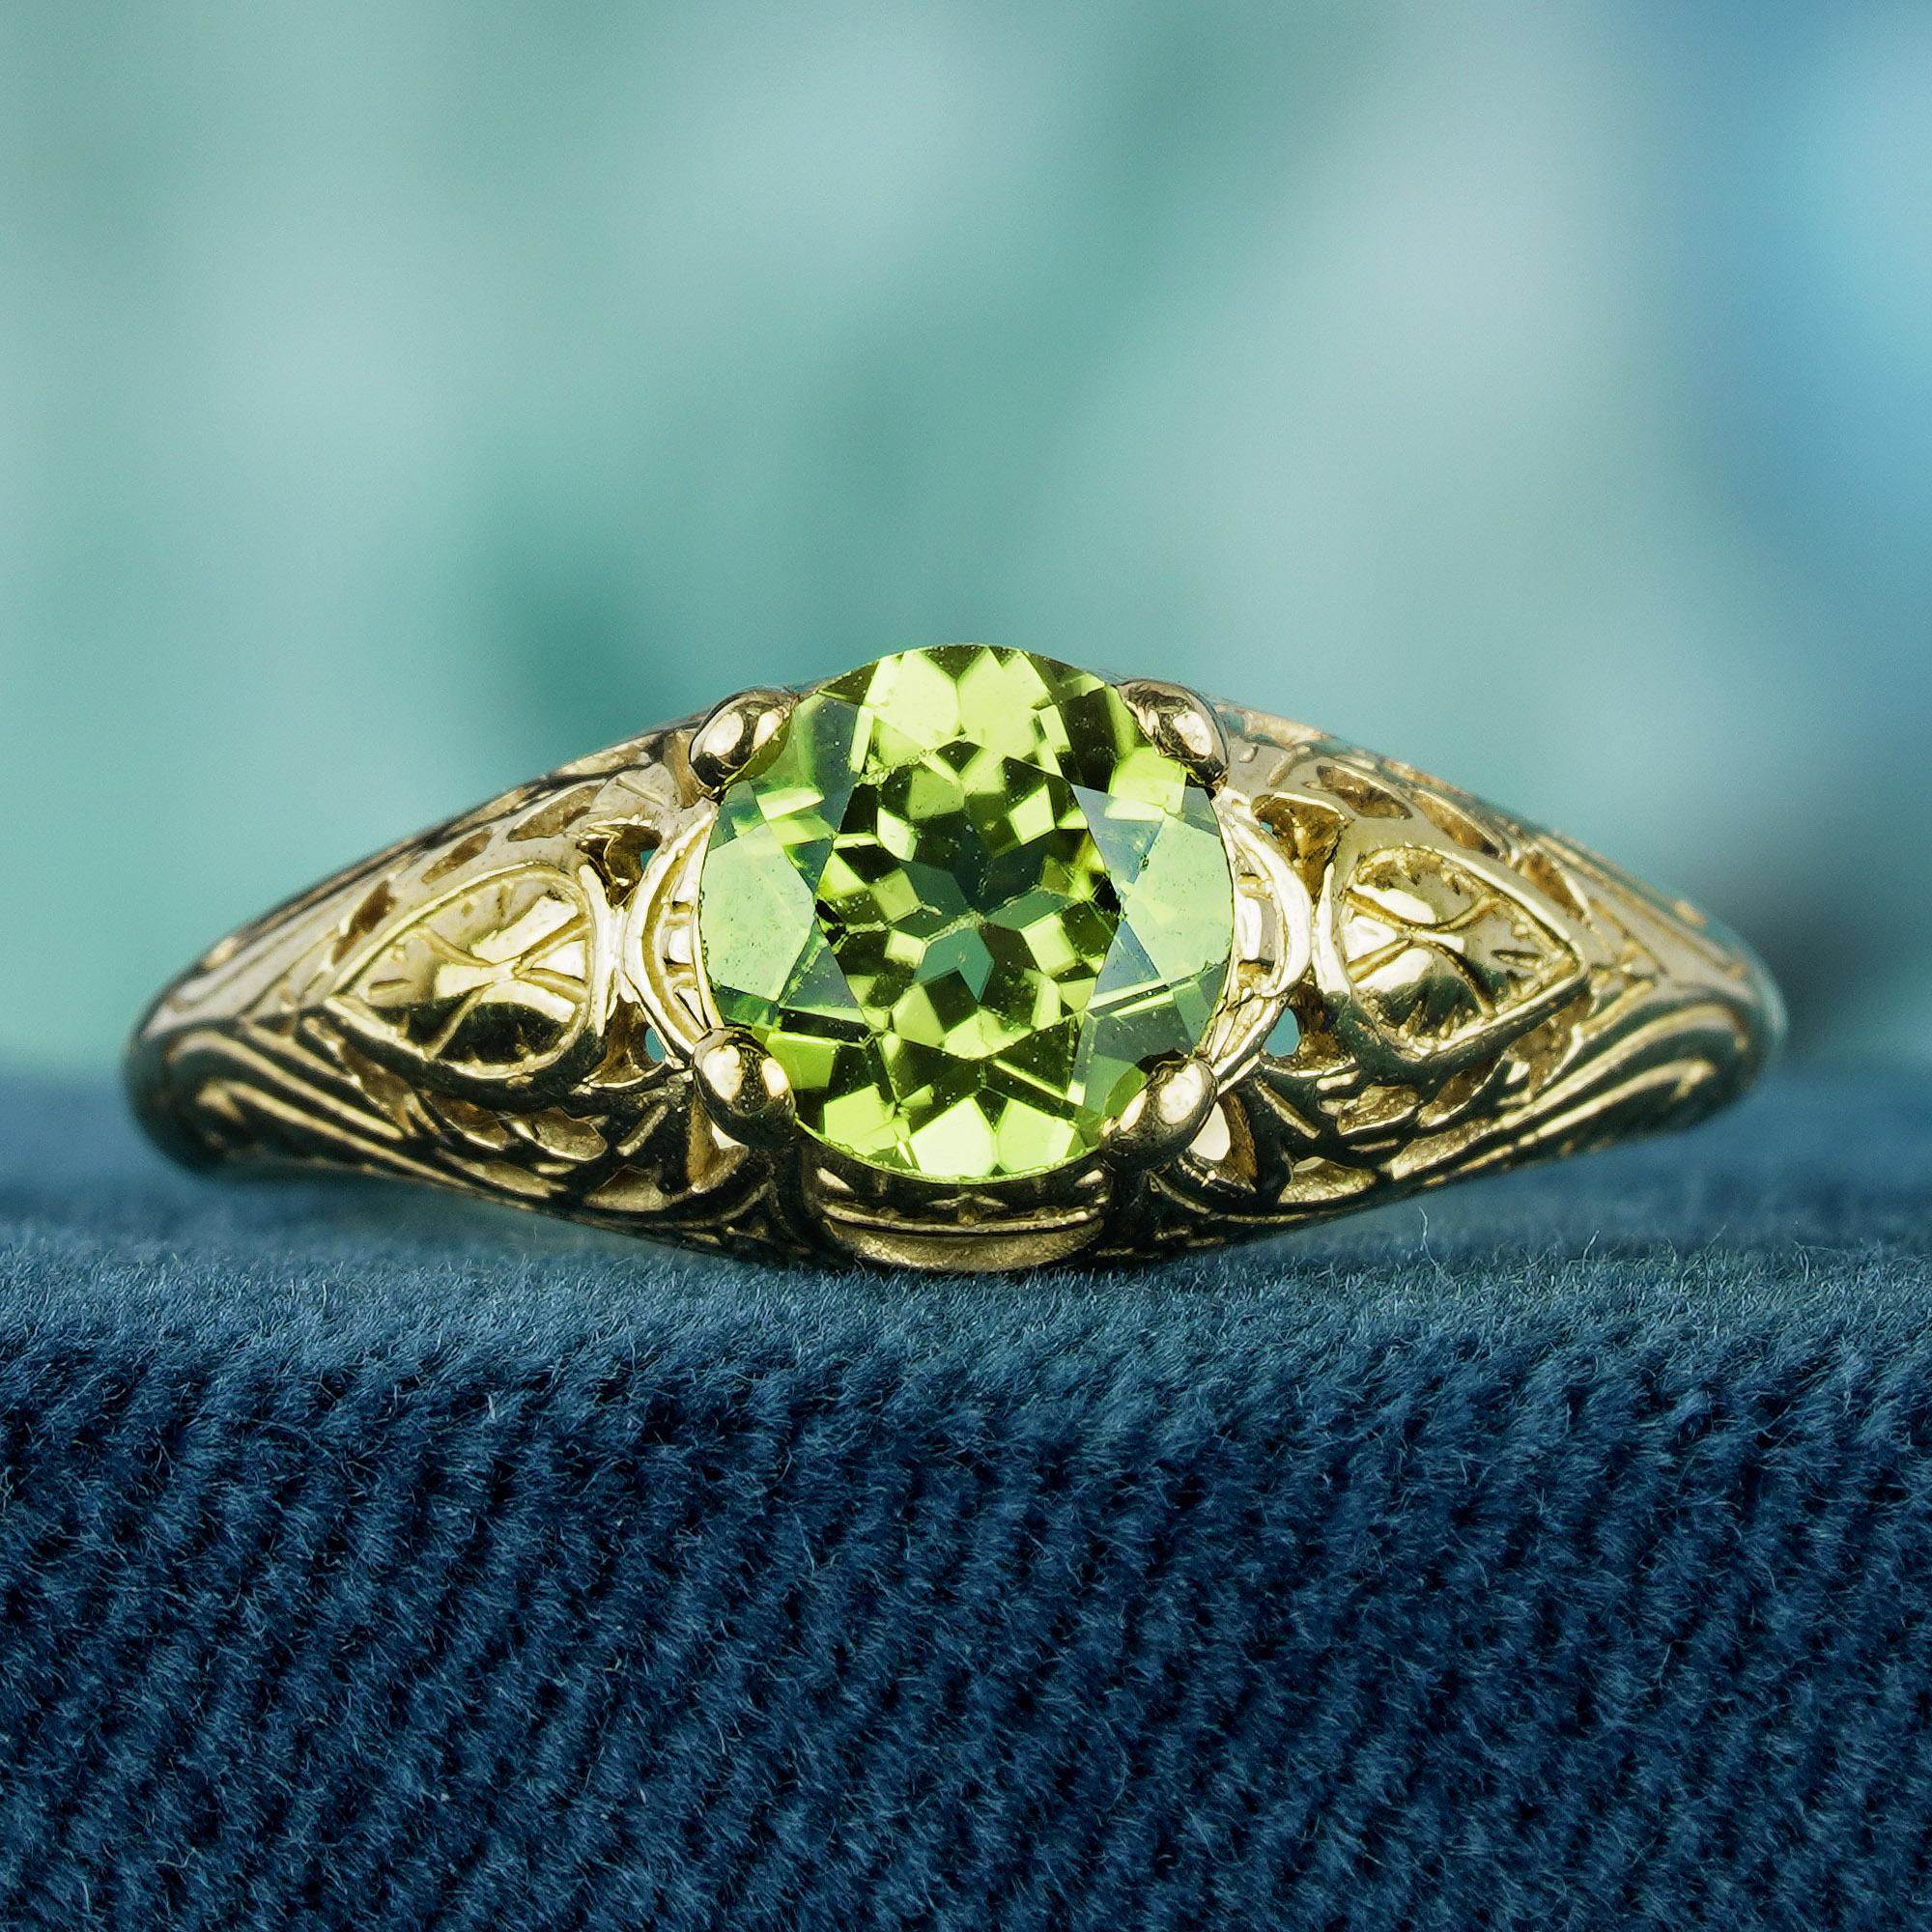 Treten Sie ein in die Welt der zeitlosen Eleganz mit unserem atemberaubenden, von Vintage inspirierten Ring. Dieser mit Sorgfalt gefertigte Ring hat ein geschnitztes Gelbgoldband, das Luxus und Raffinesse ausstrahlt. Sein Herzstück ist ein